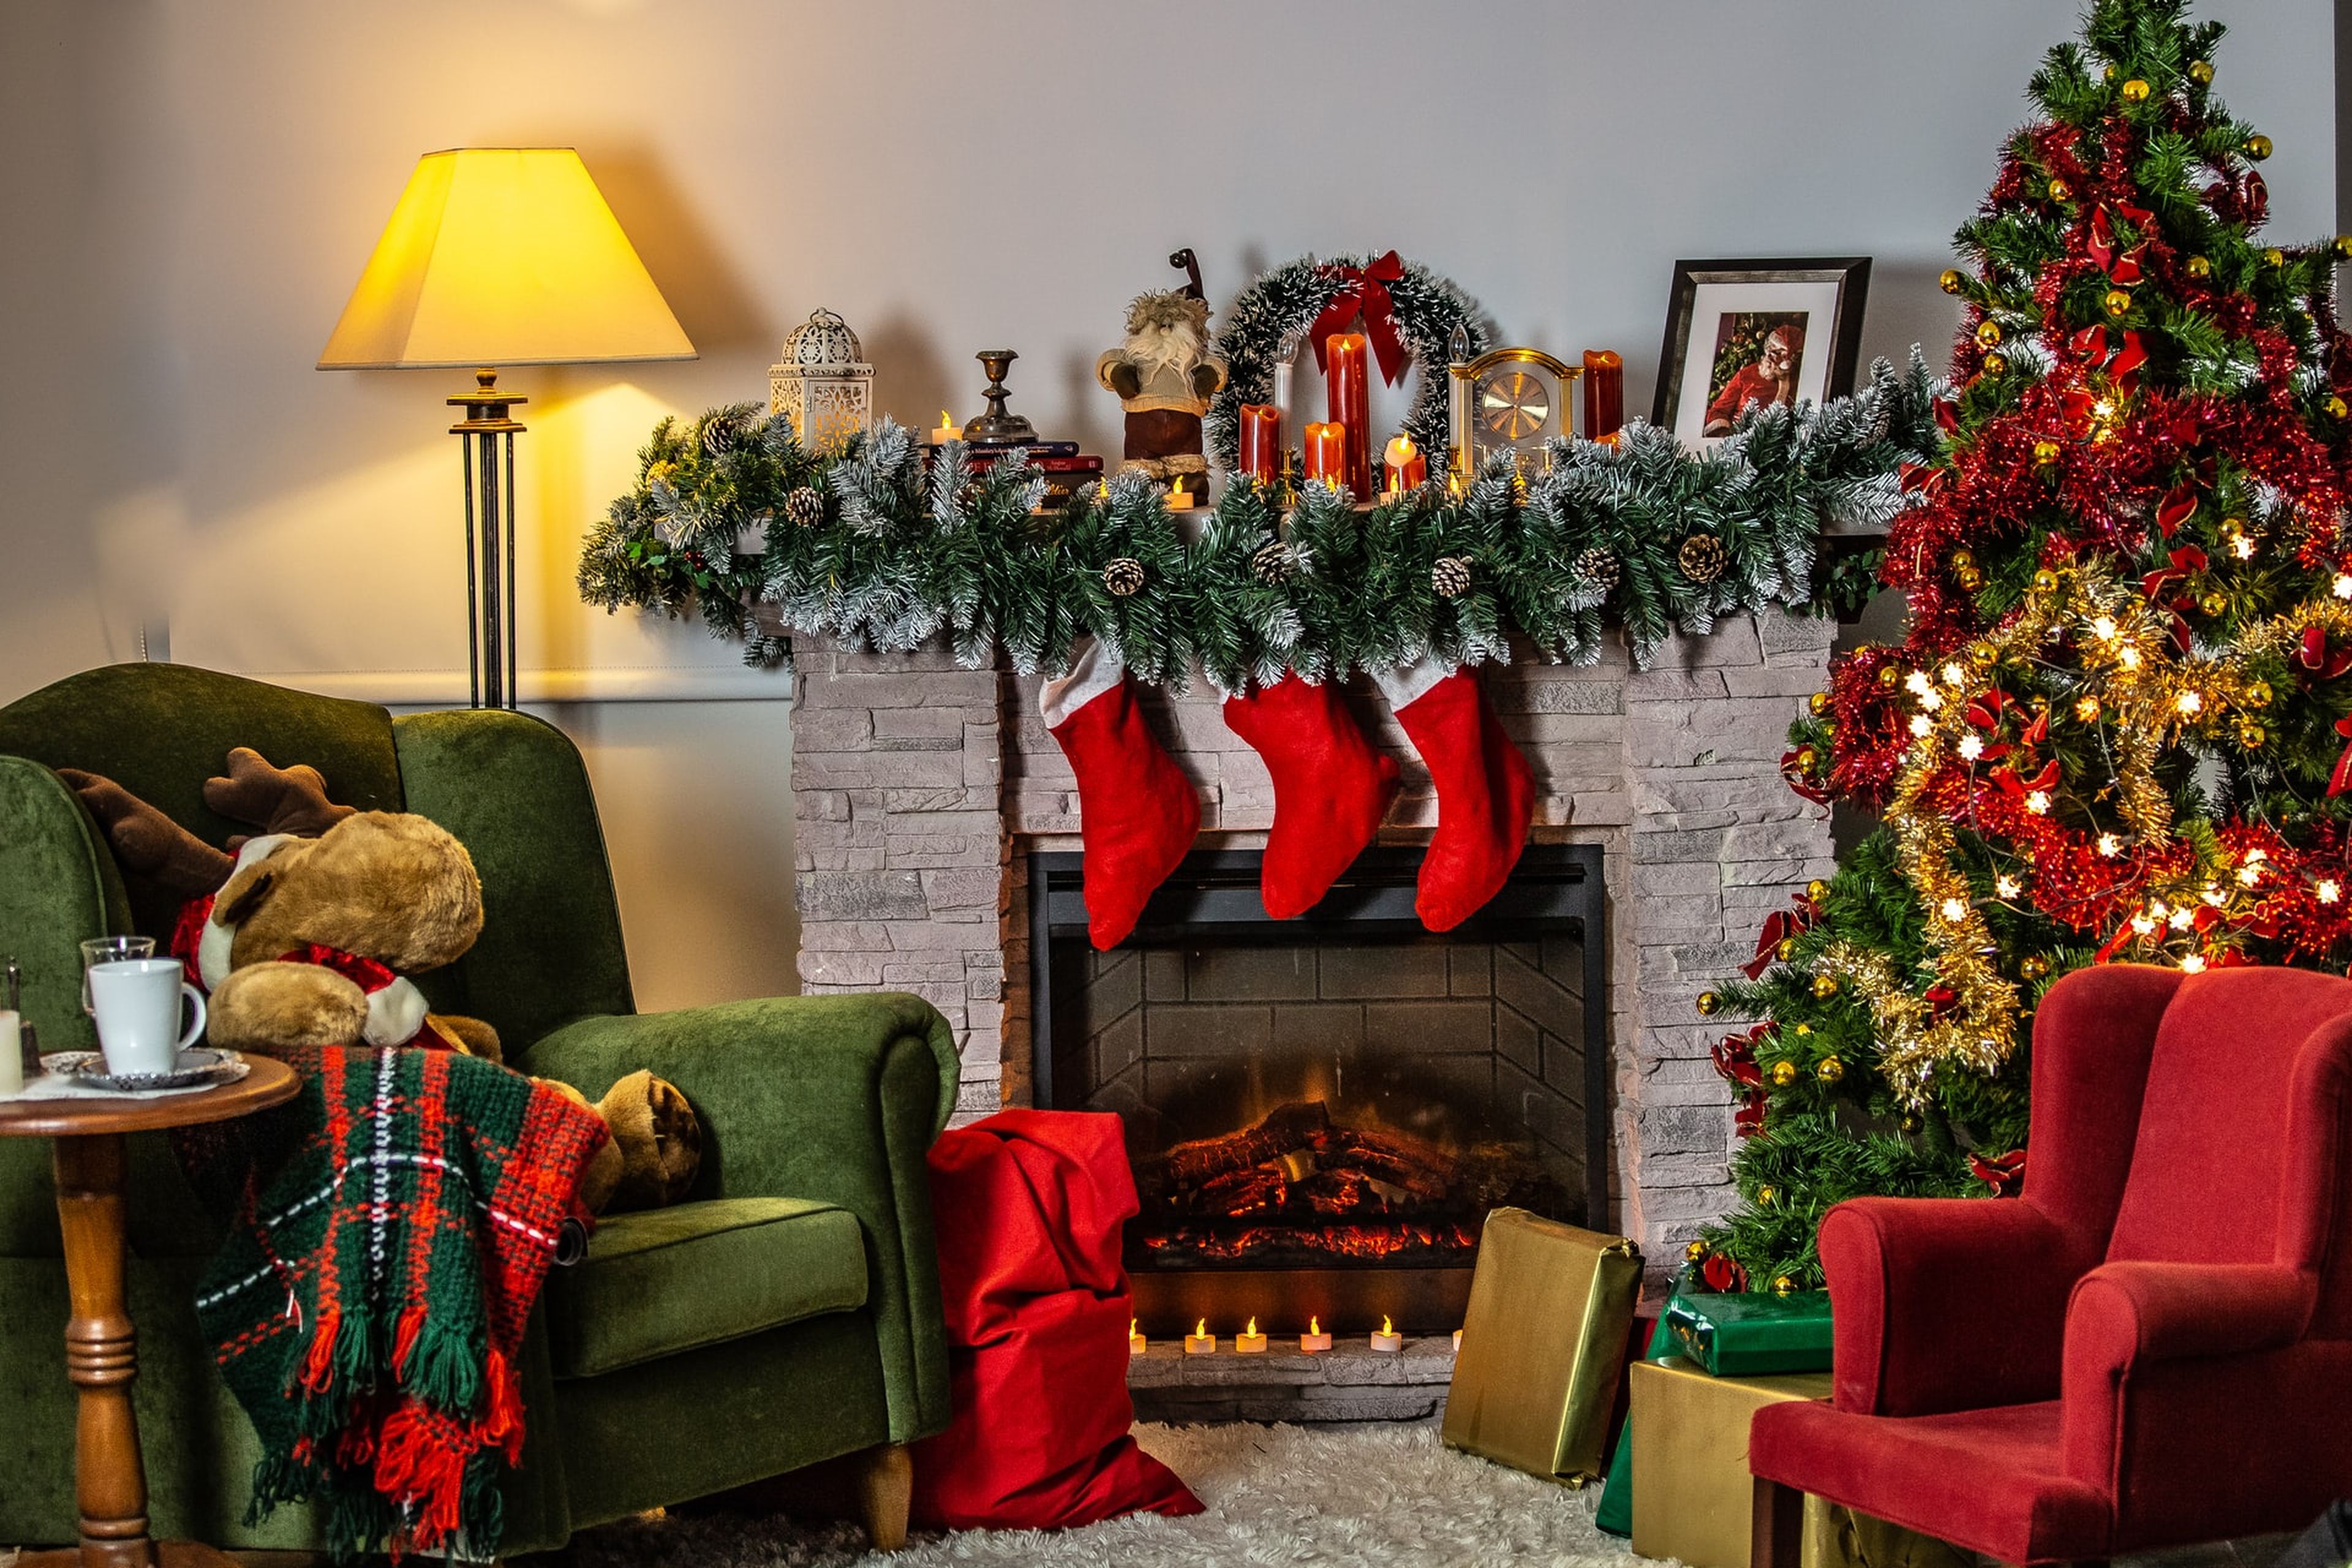 La decoración navideña puede recordarnos tiempos más simples y felices, evocando las emociones de la infancia.